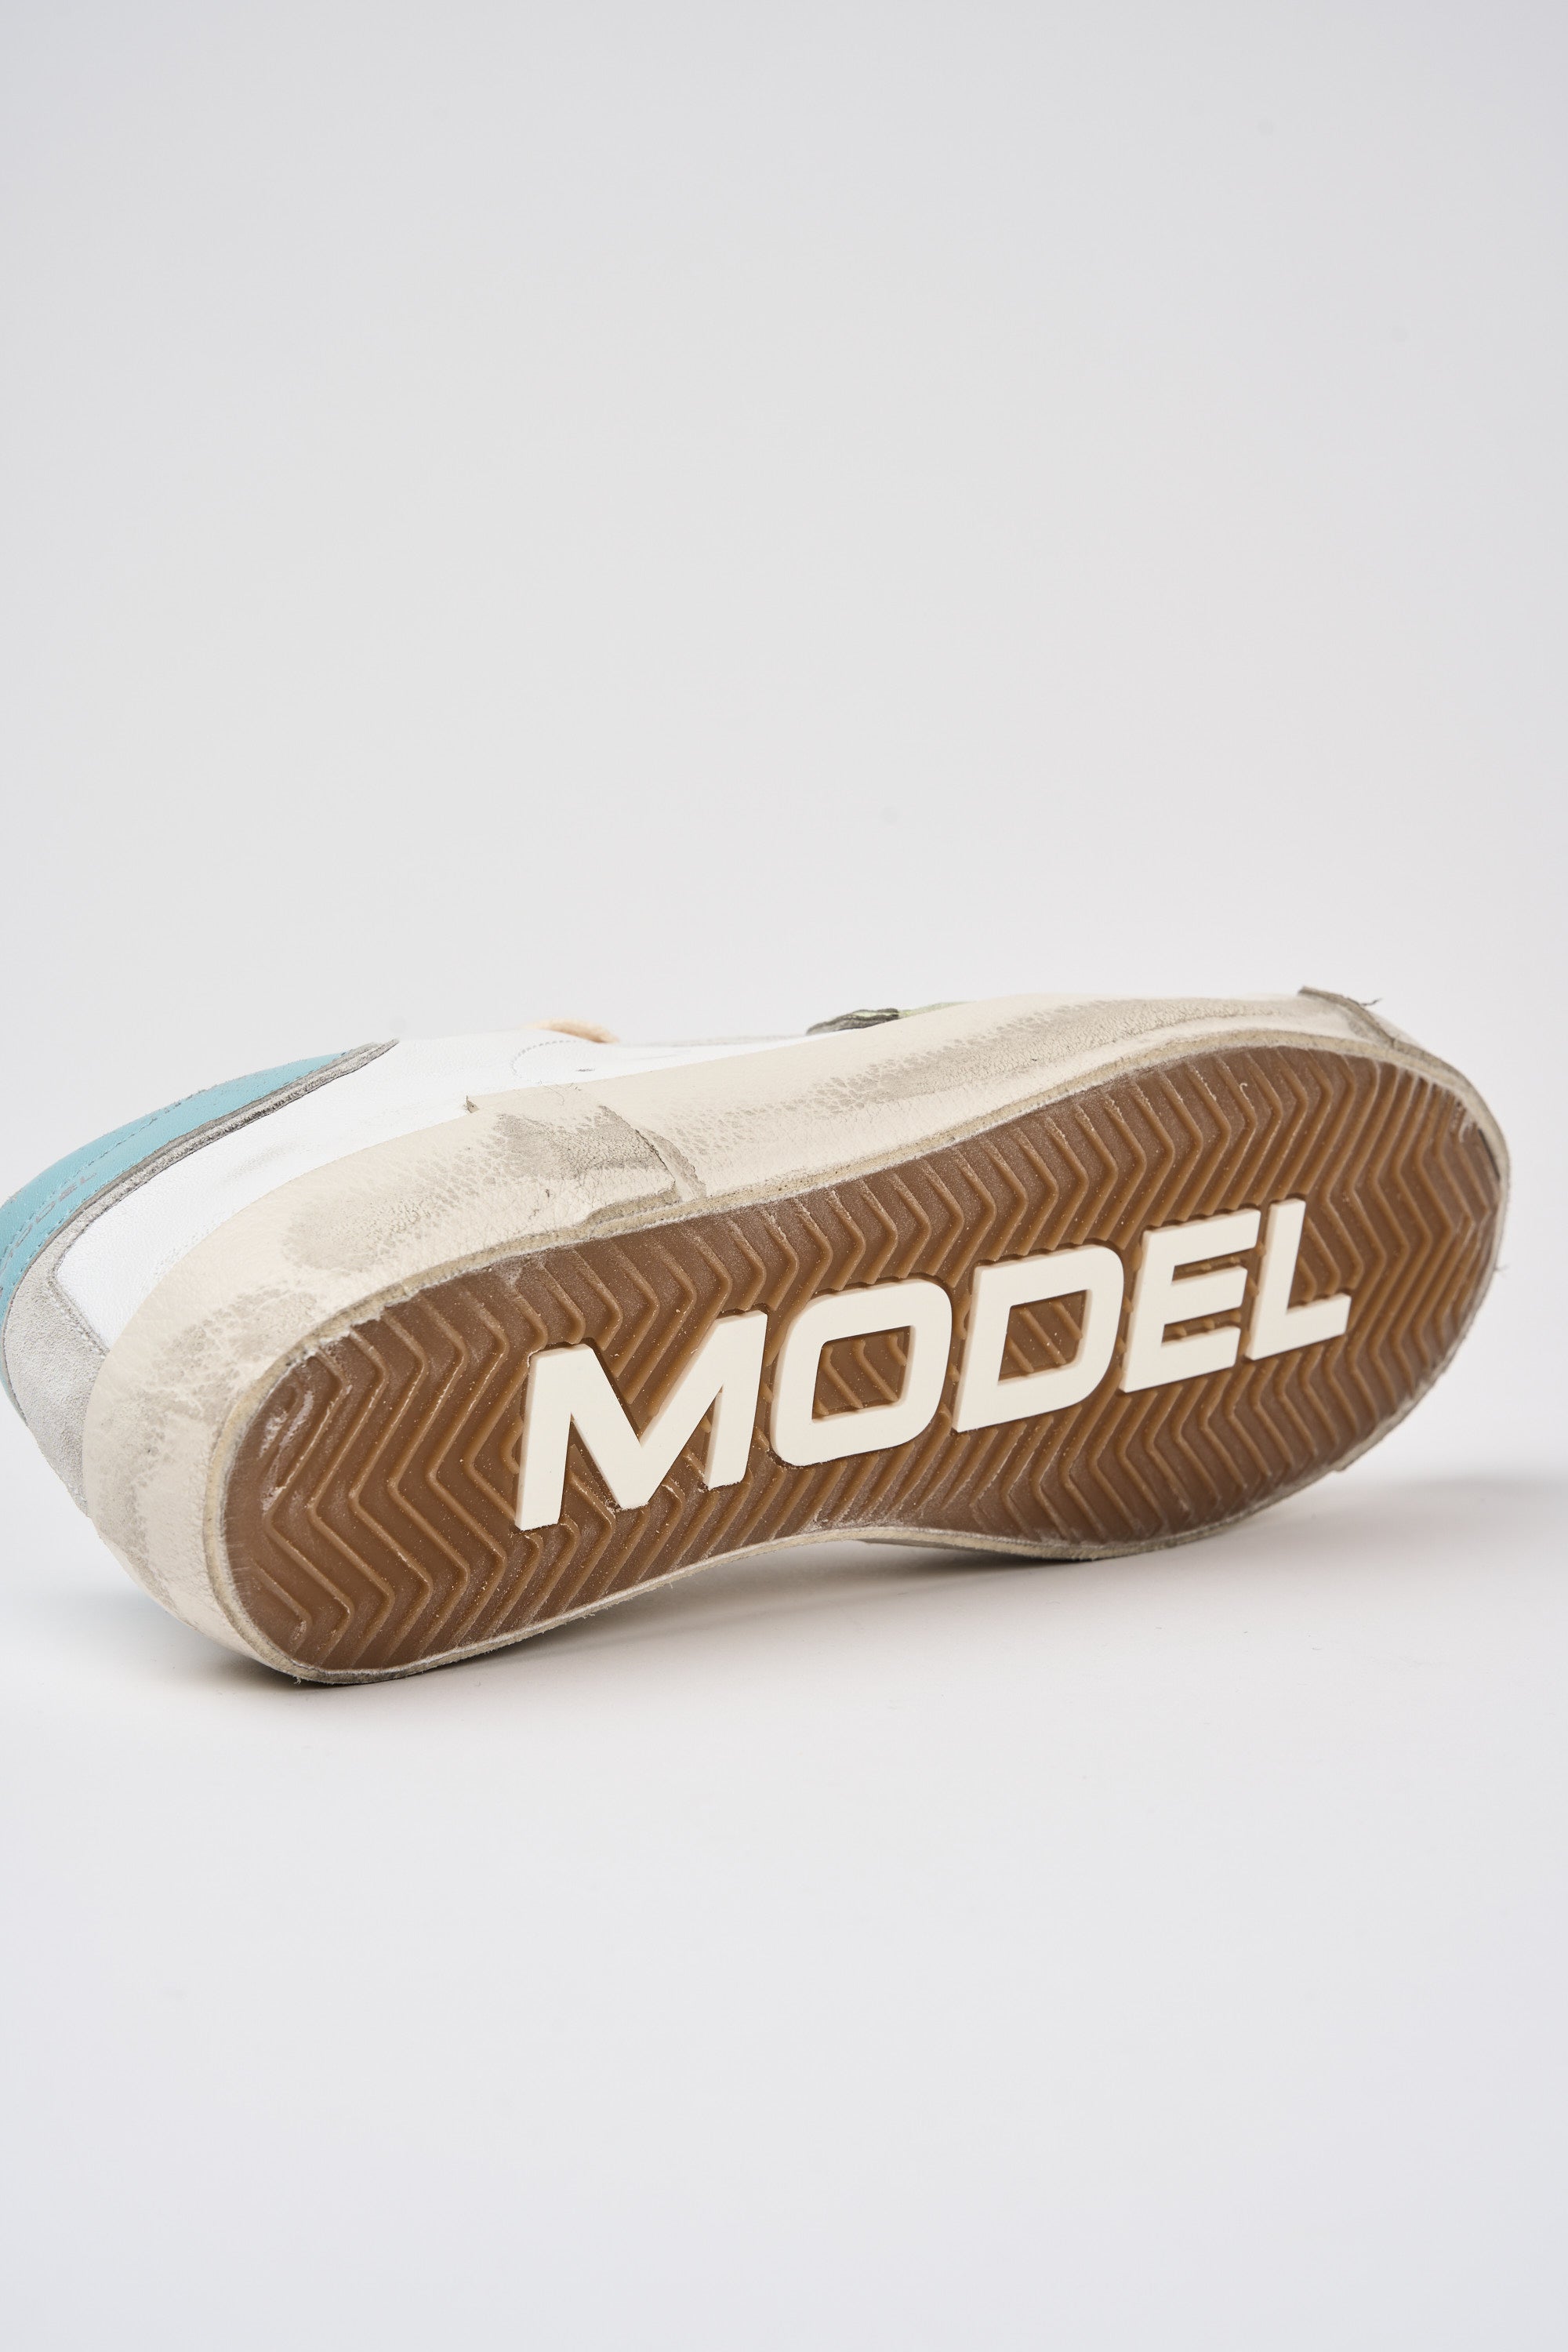 Philippe Model Sneakers Prsx Leder/Suede Weiß/Hellblau-5